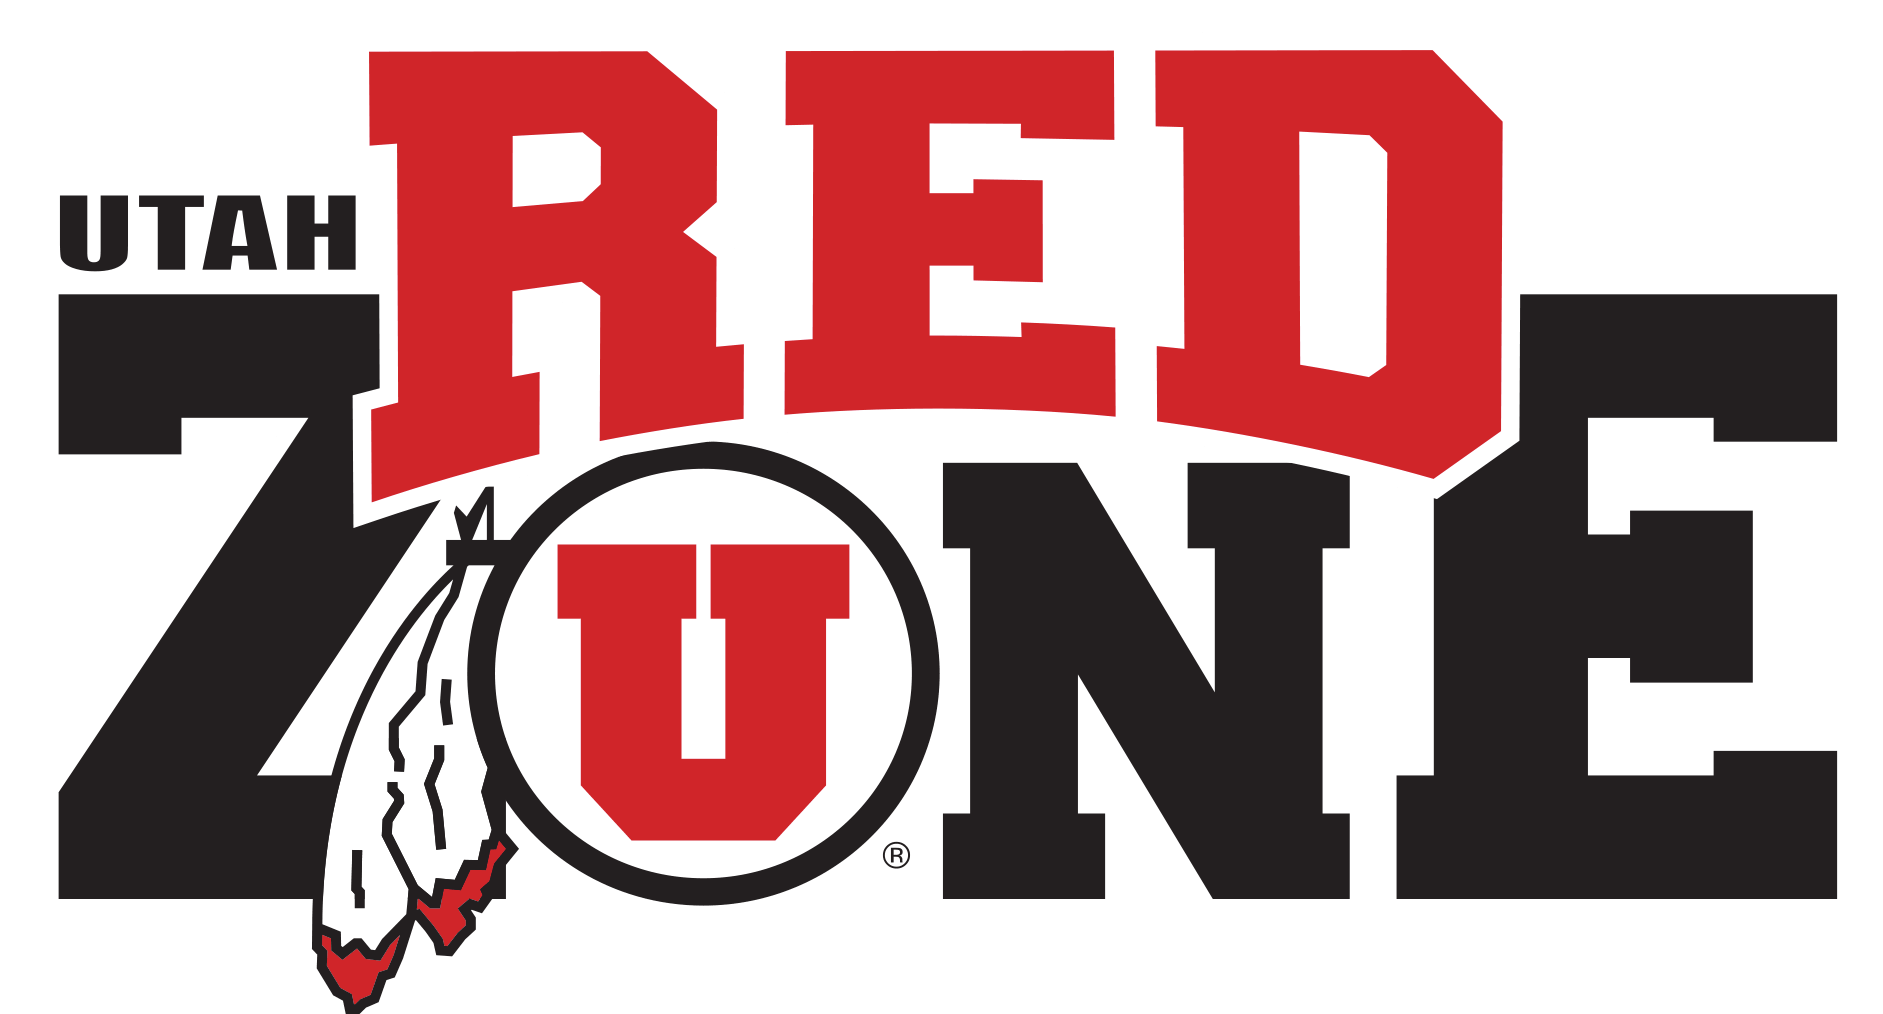 University of Utah Logo - Official Store University of Utah Utes Apparel